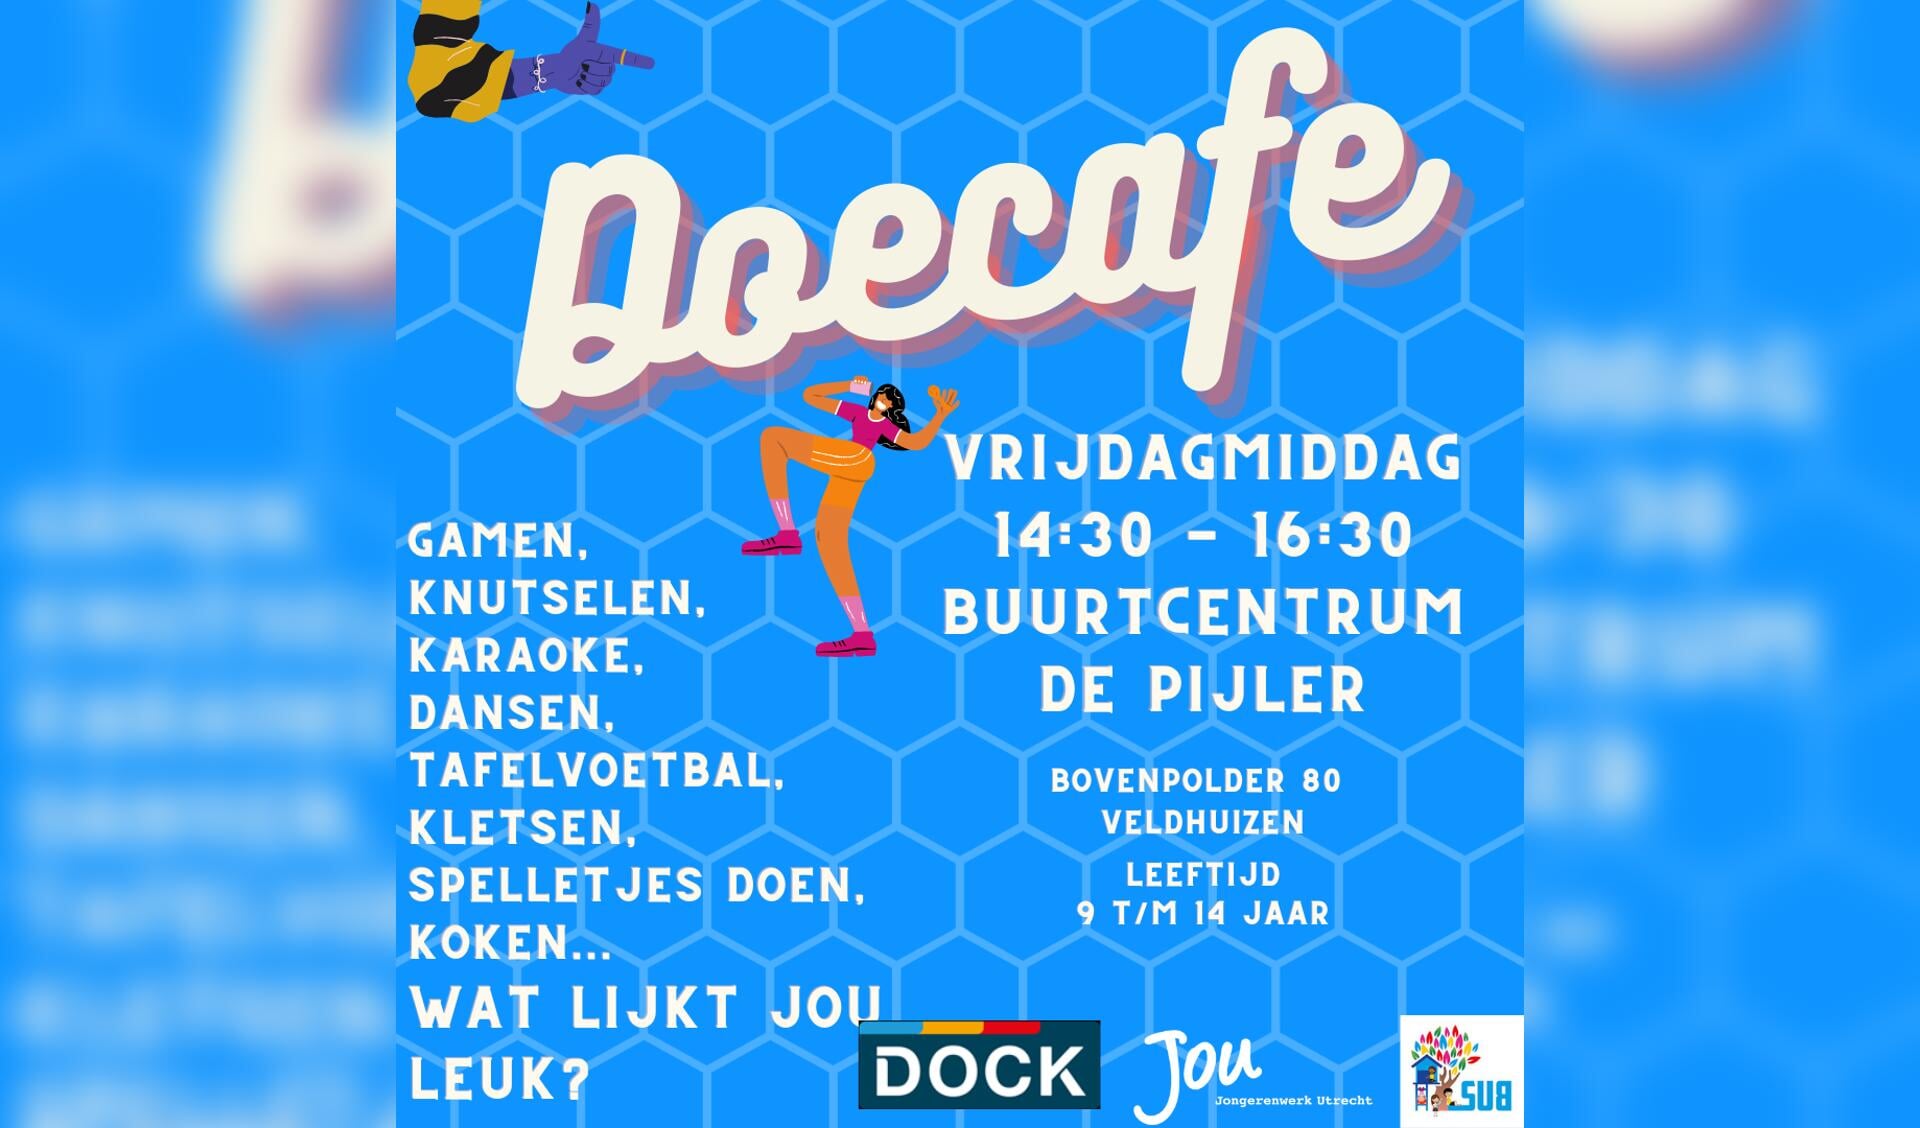 Doecafe Flyer